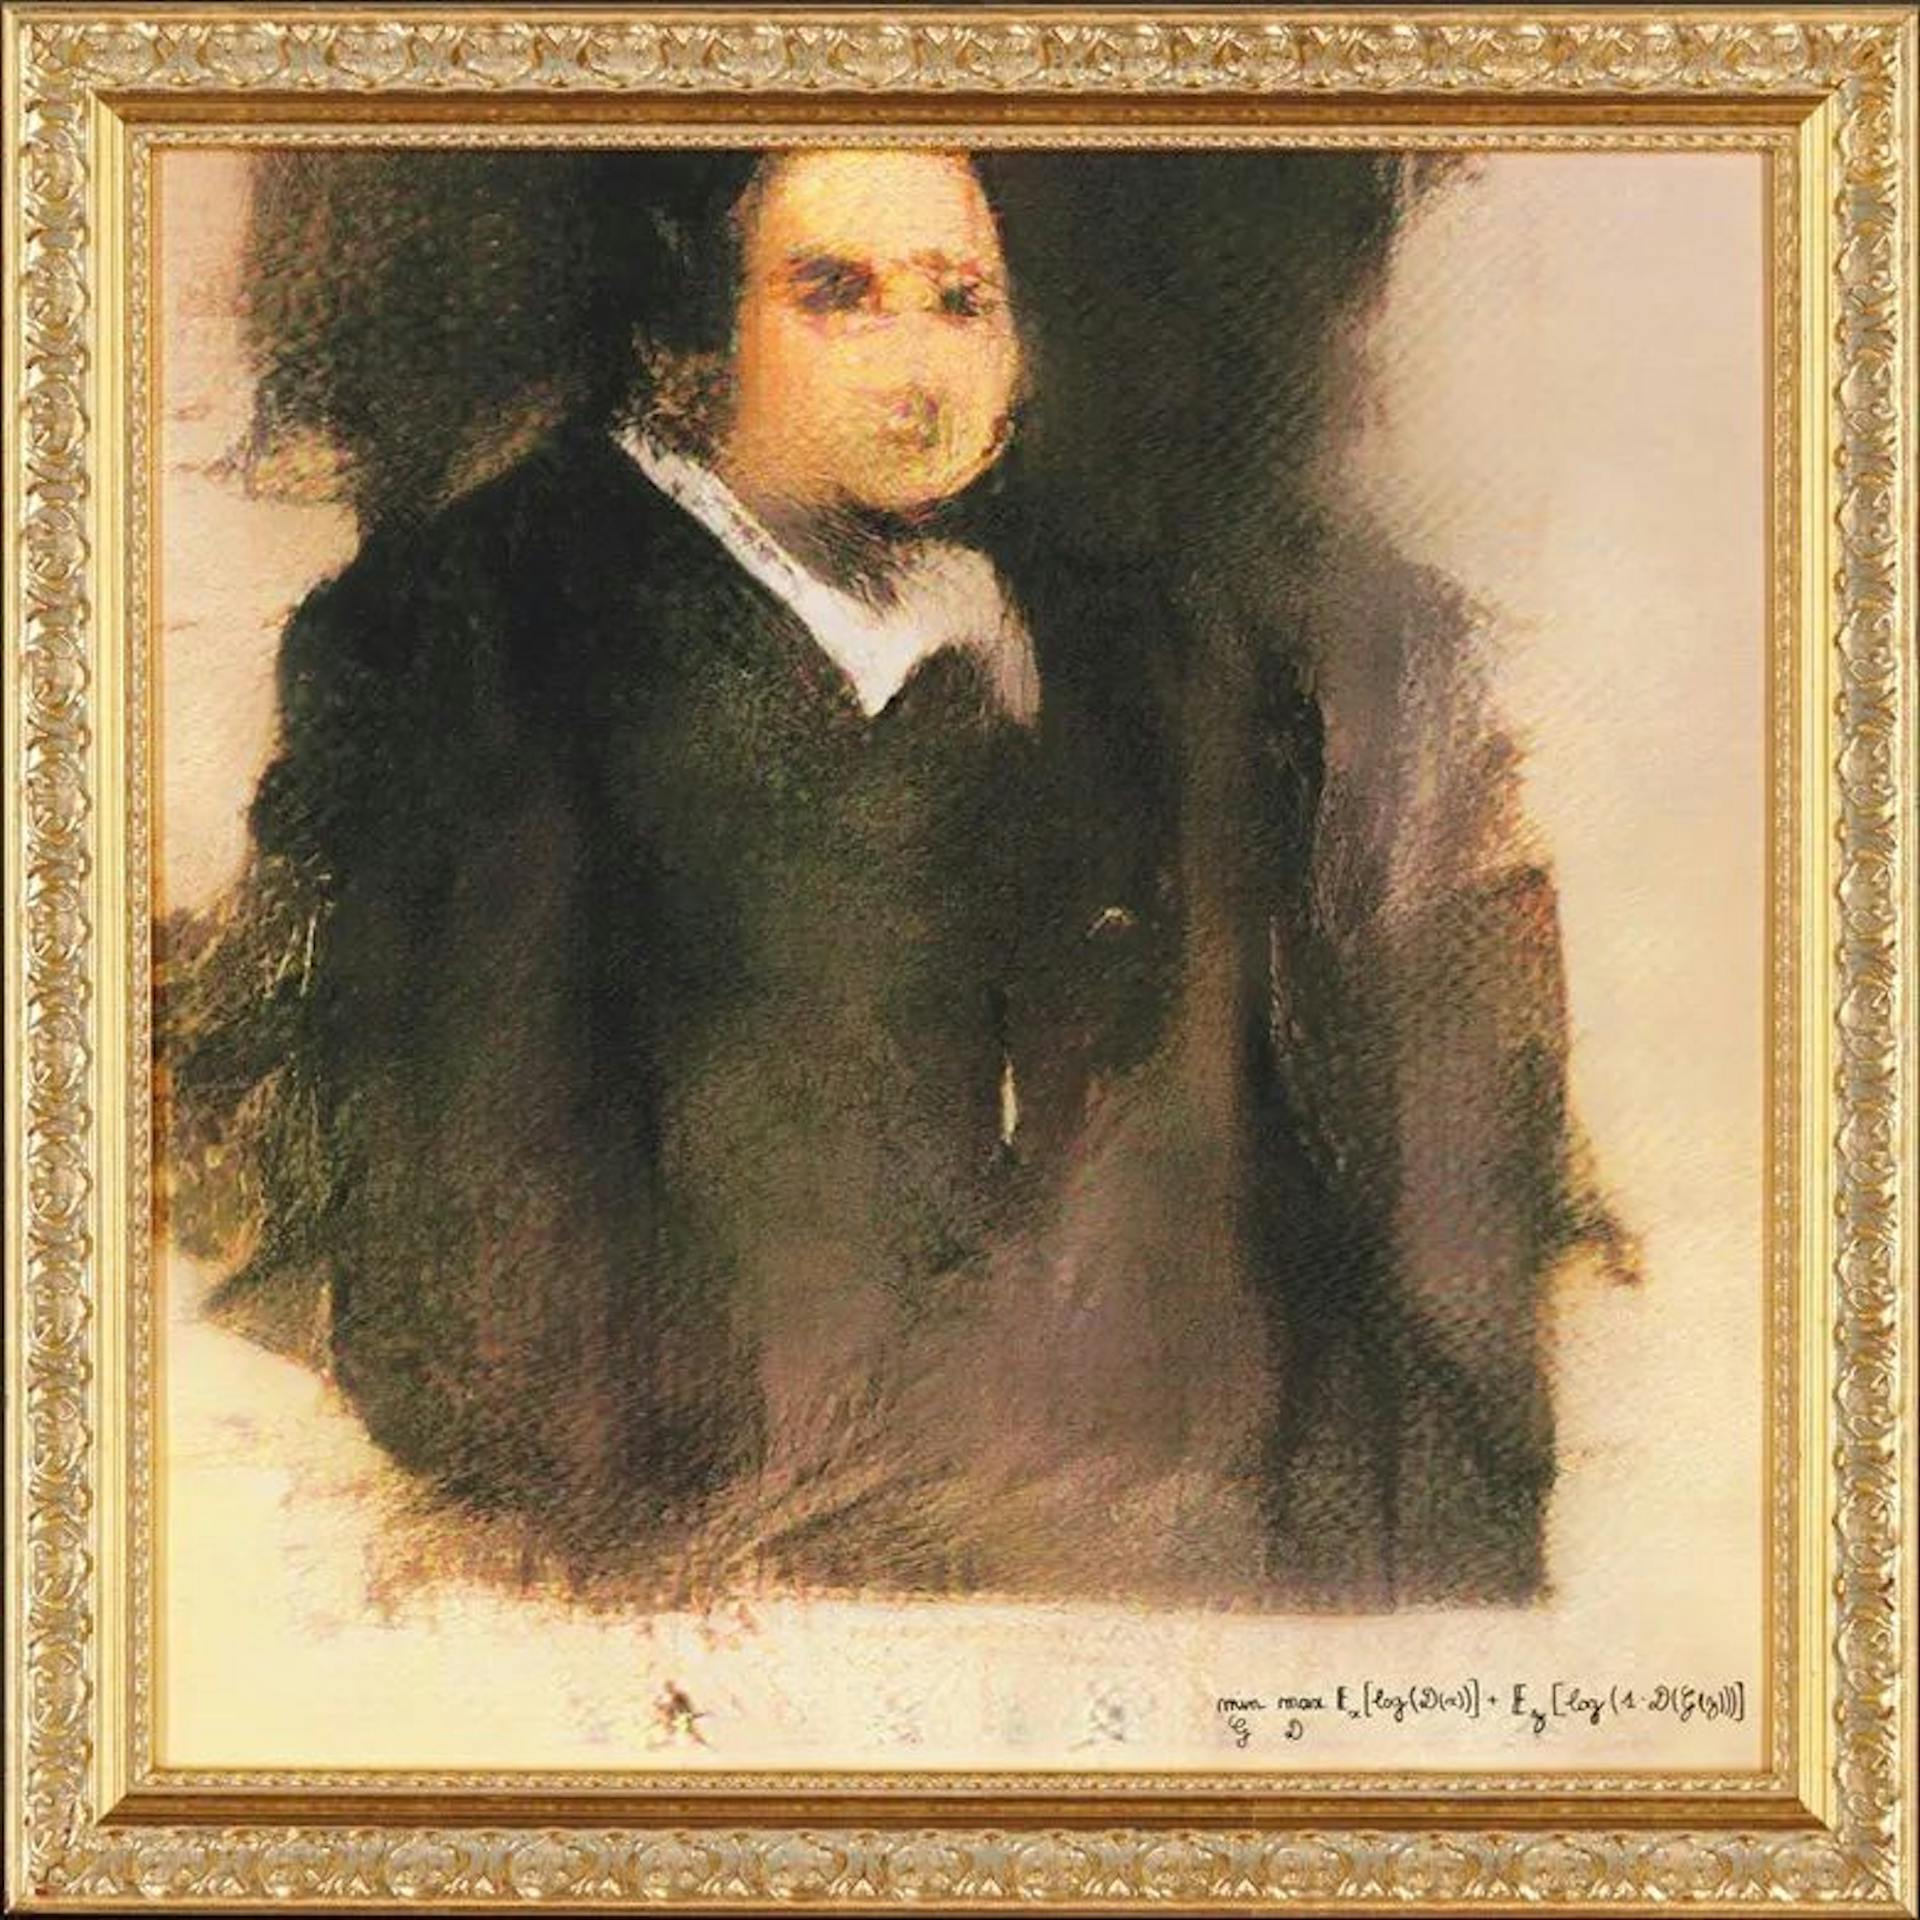 Porträt von Edmond de Belamy, das erste KI-Porträt, das Christie’s für 432.500 US-Dollar verkaufte. Wer bekommt den Kredit? Mensch oder Maschine?